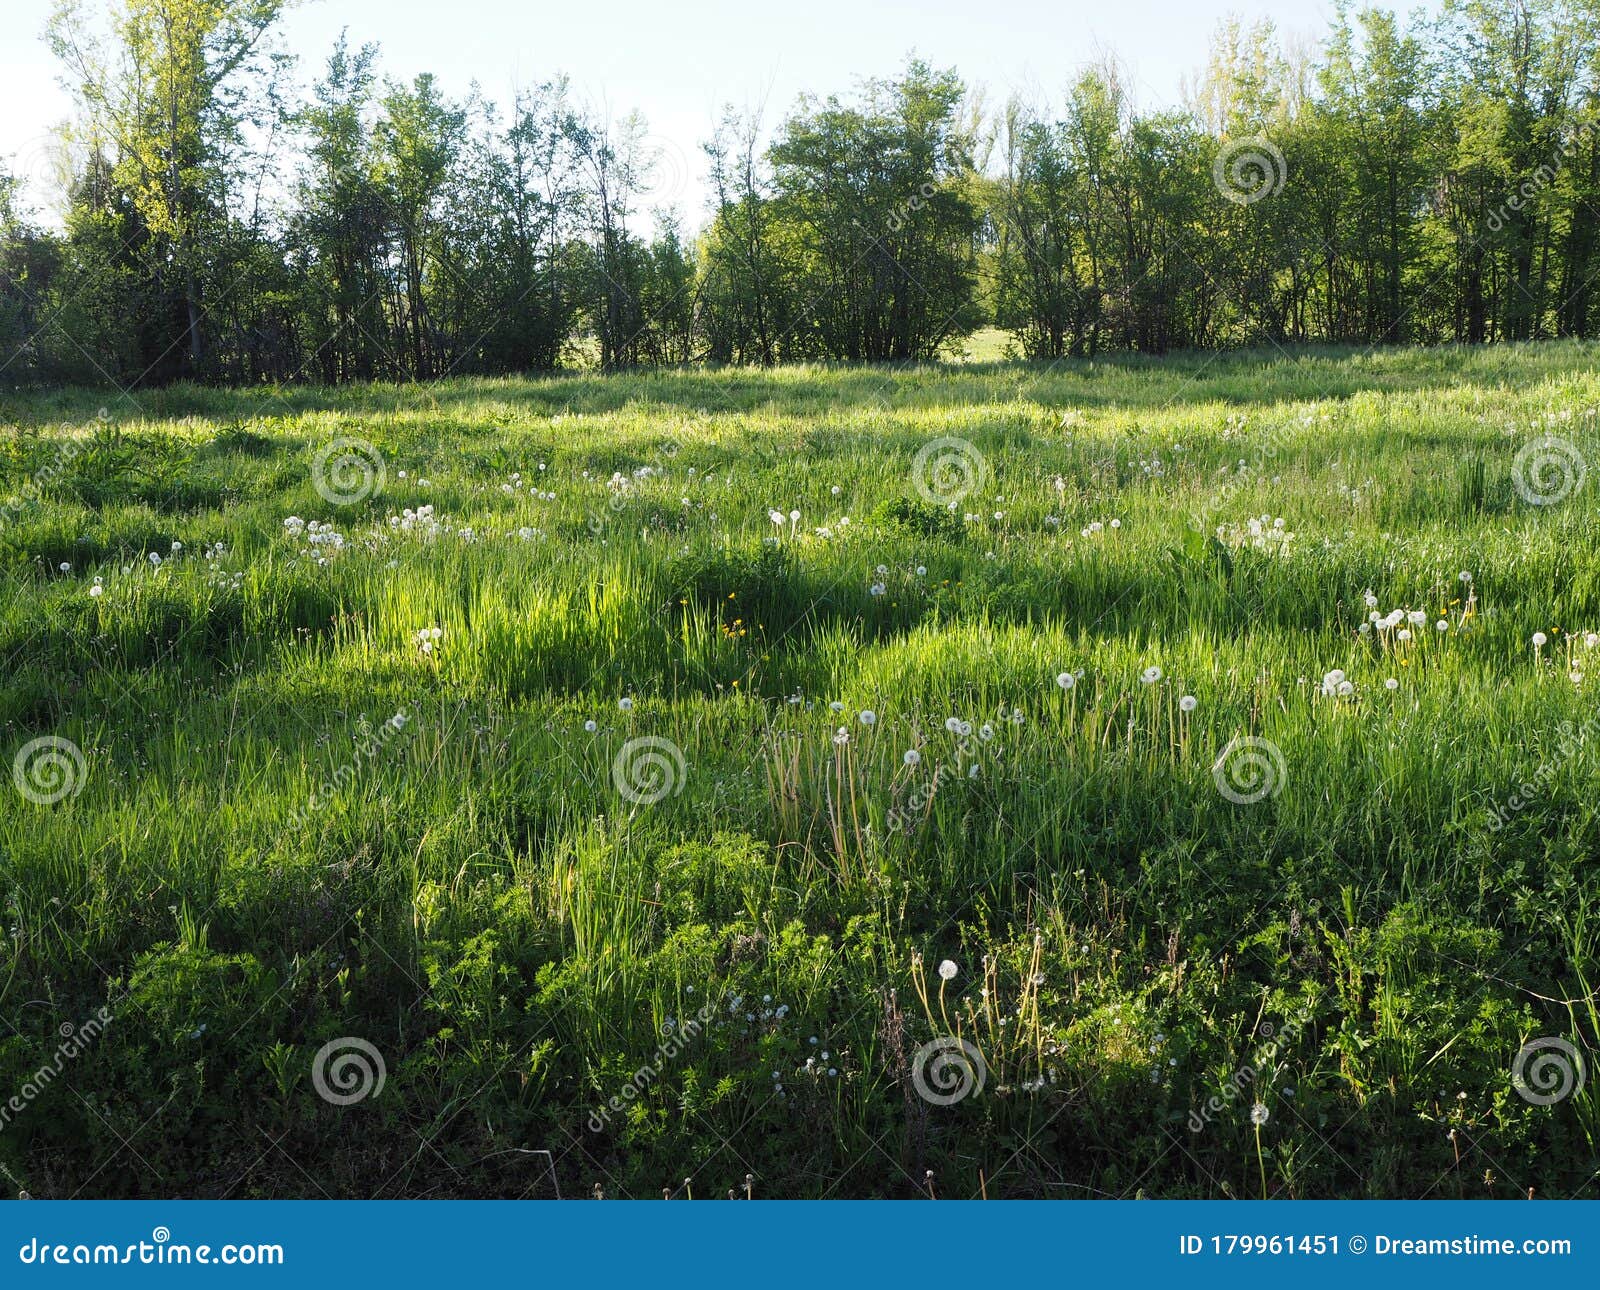 spanish meadow 